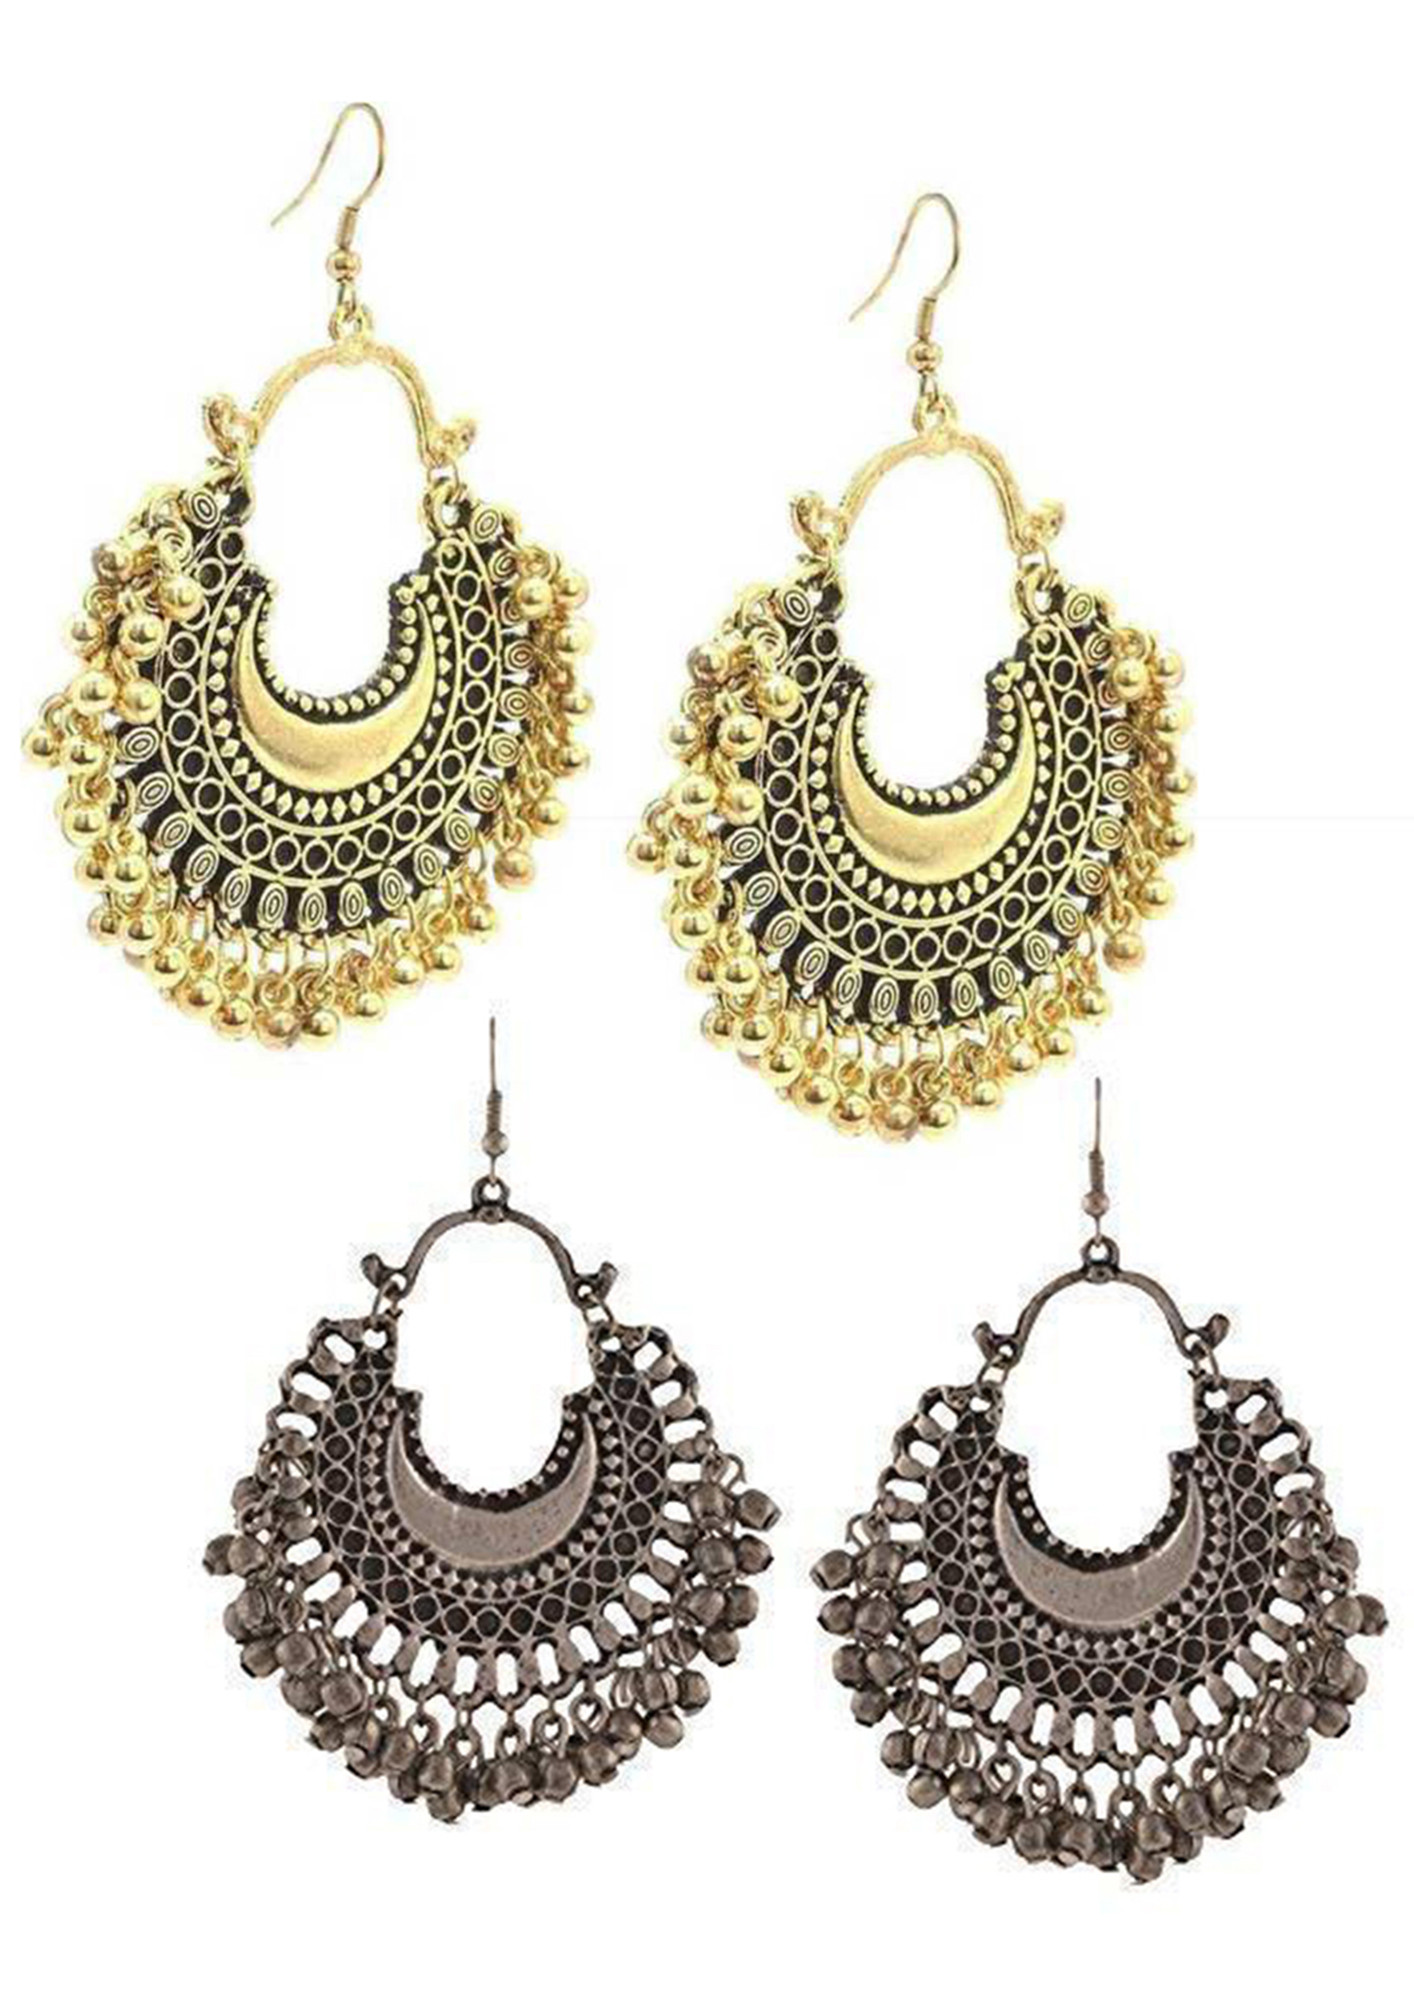 Buy Earrings for Girls & Women Online in India - Priyaasi